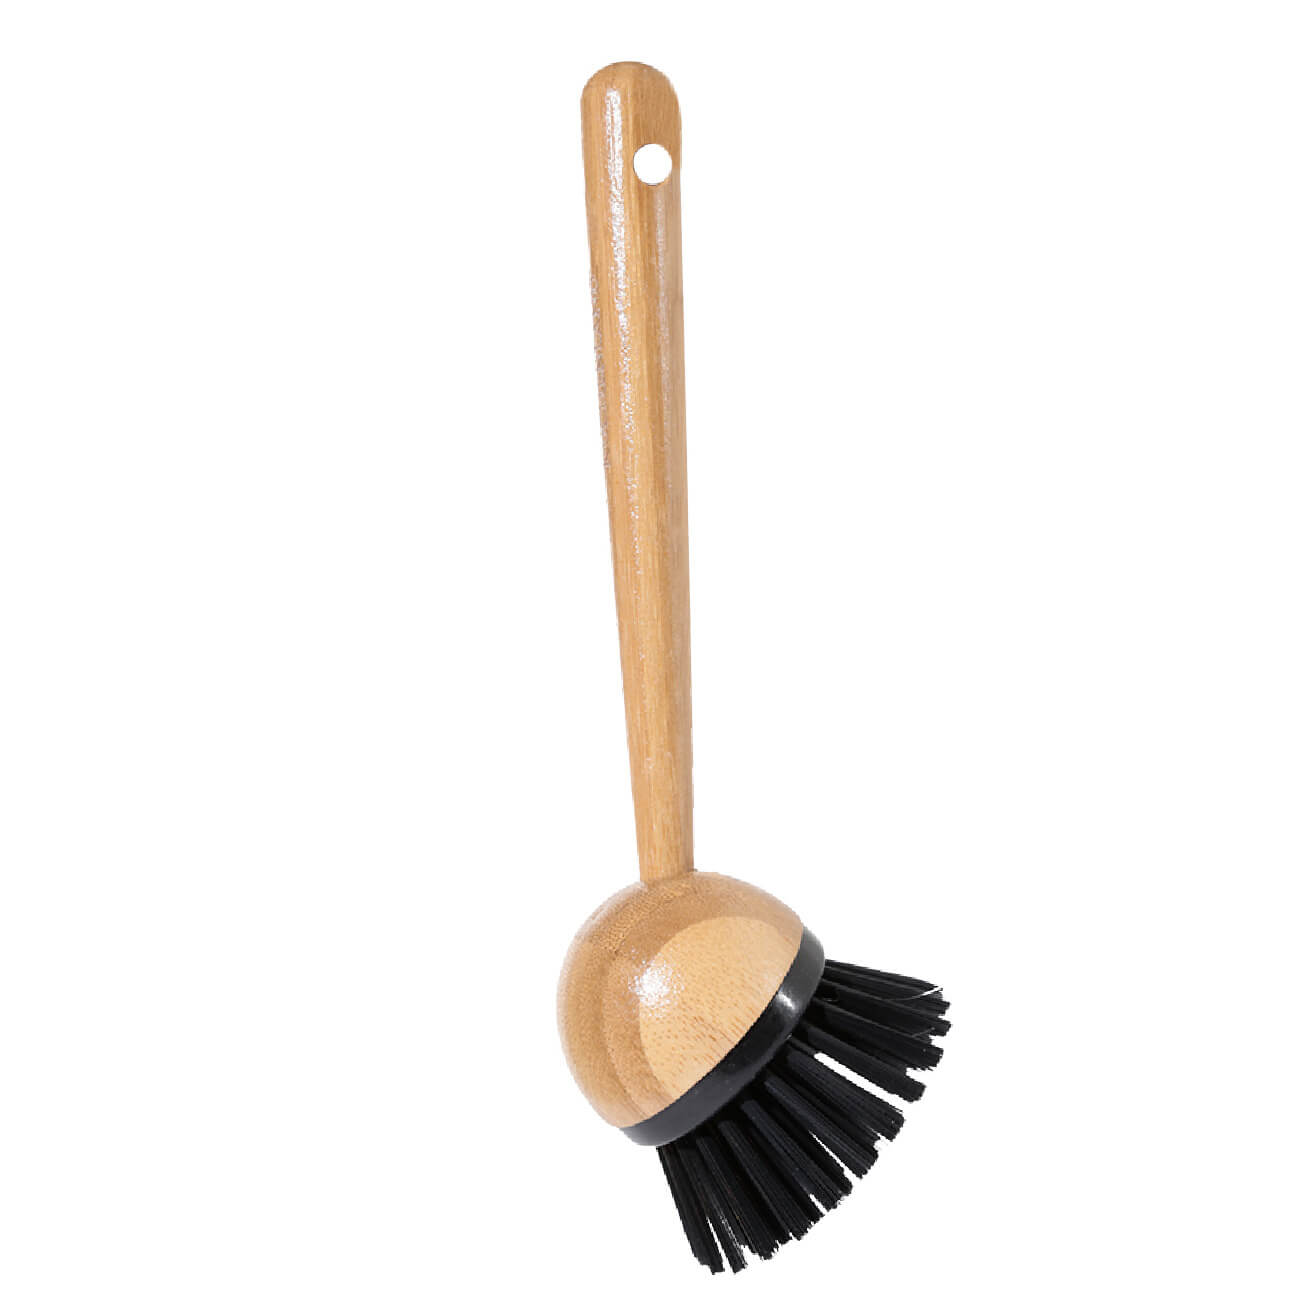 Щетка для уборки, 21 см, пластик/бамбук, черная, Black clean зубная щетка colgate бамбук древесный уголь черная мягкая